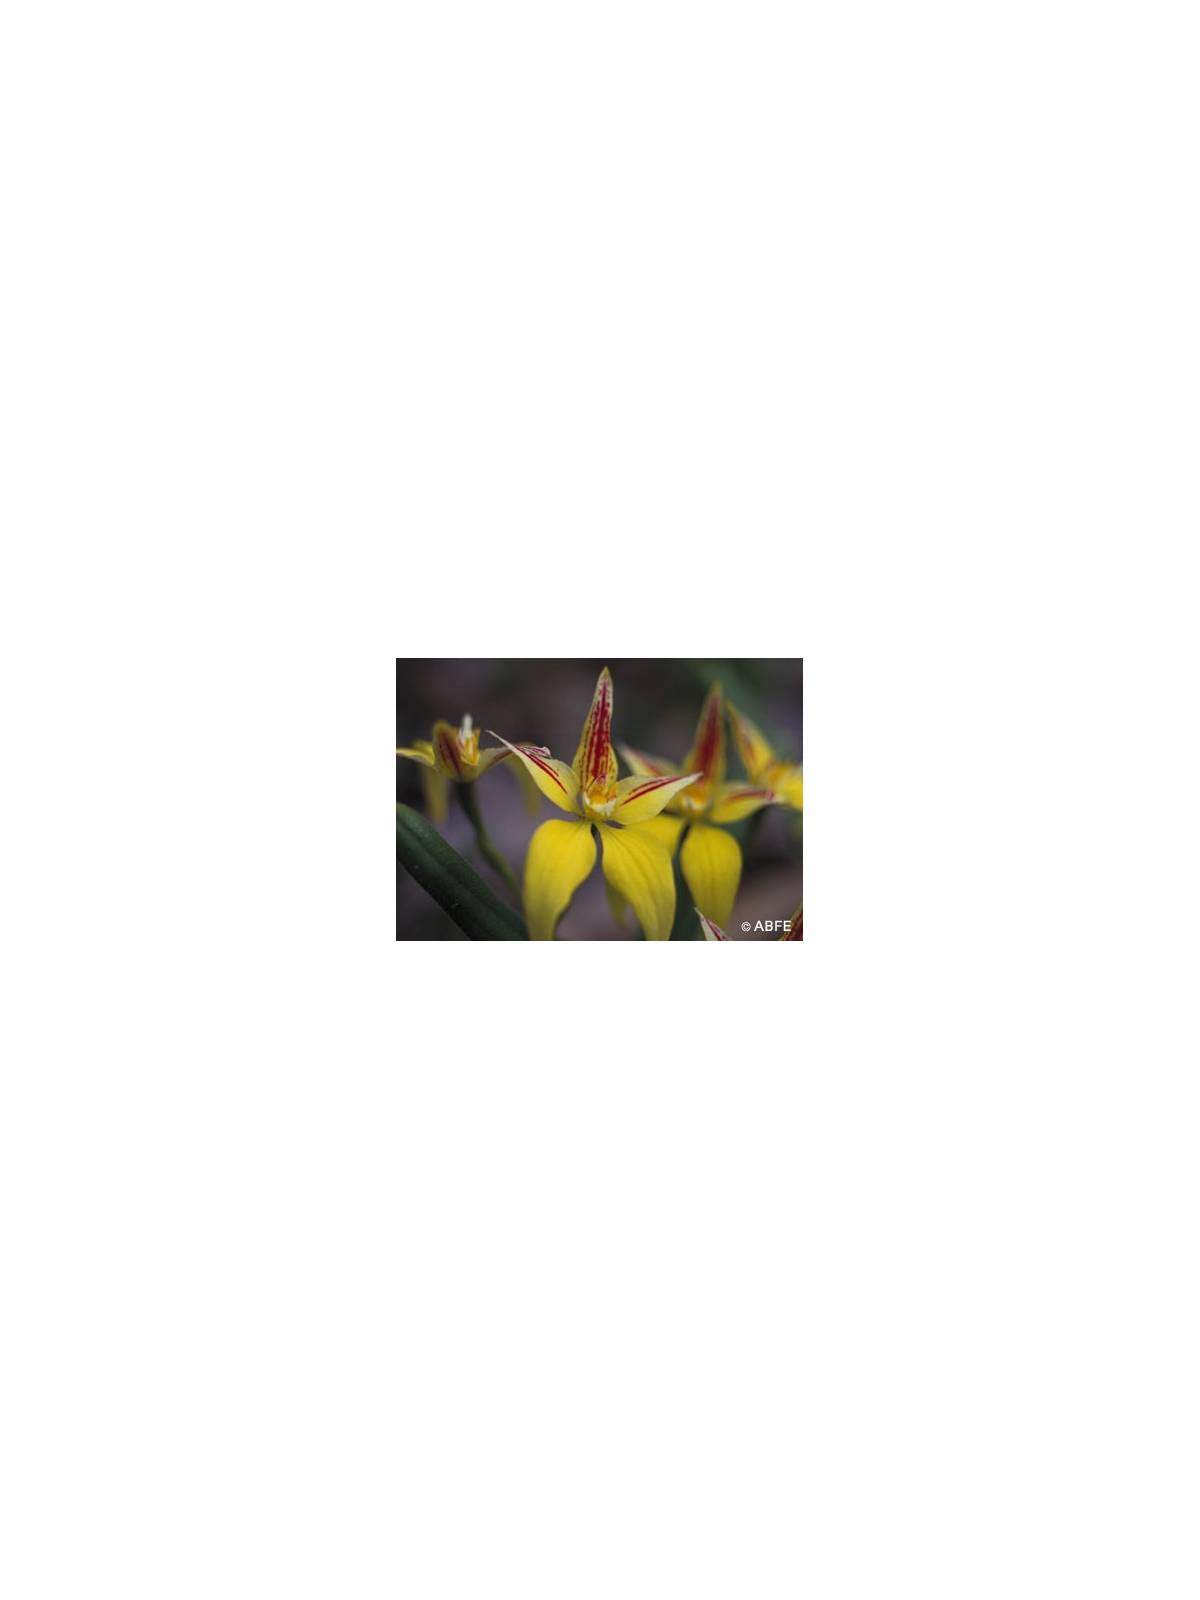 Yellow Cowslip Orchid Australian Bush Flower Essences